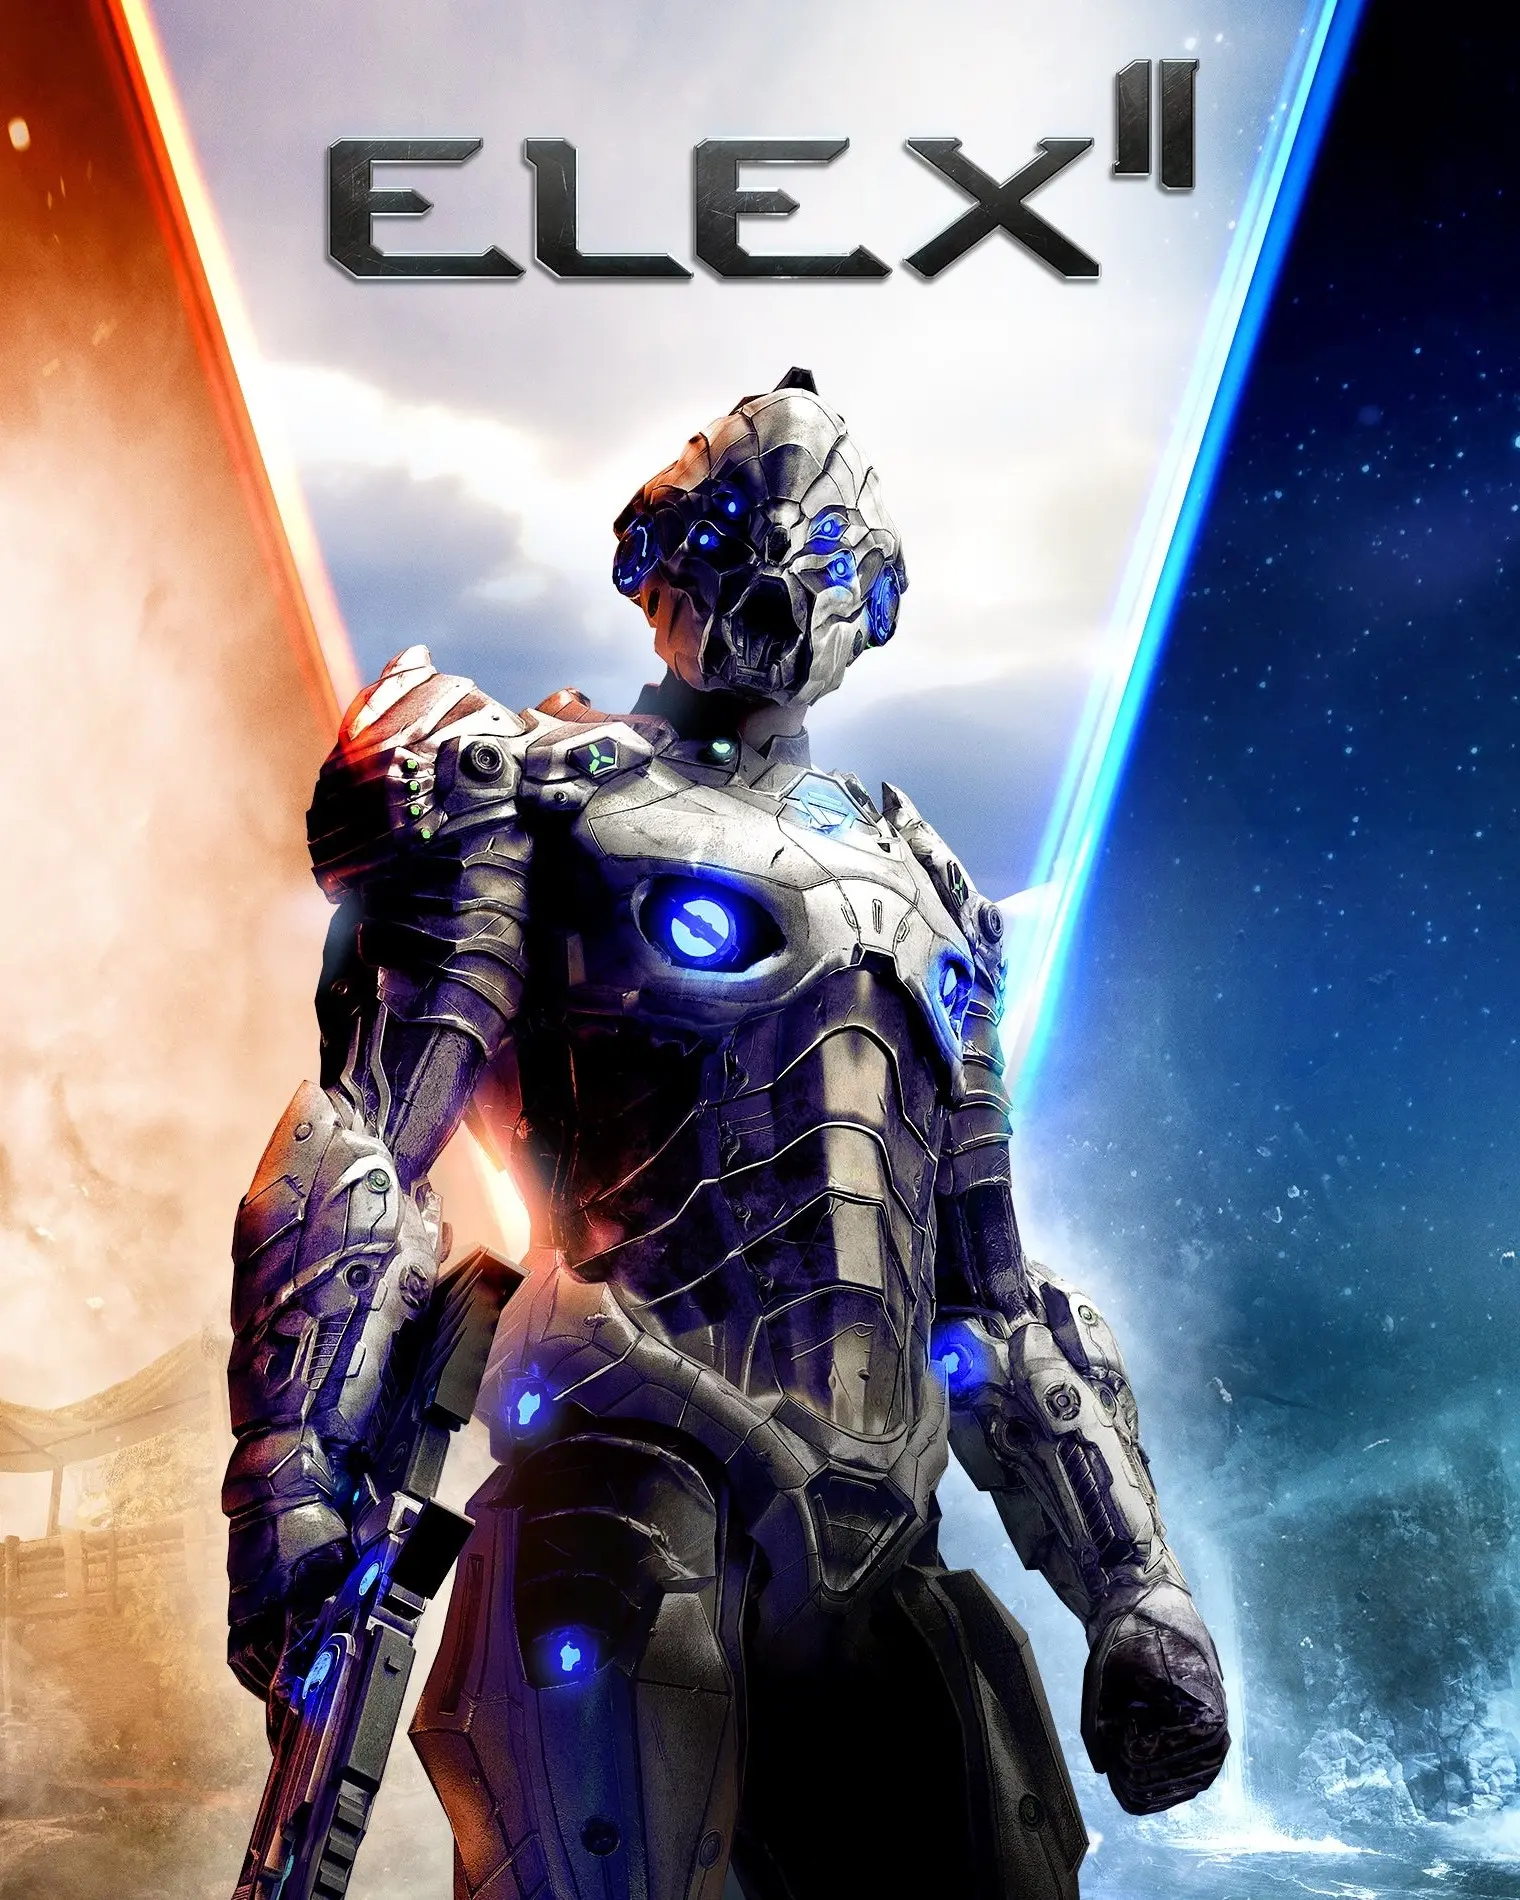 Elex II (AR) (Xbox One / Xbox Series X|S) - Xbox Live - Digital Code